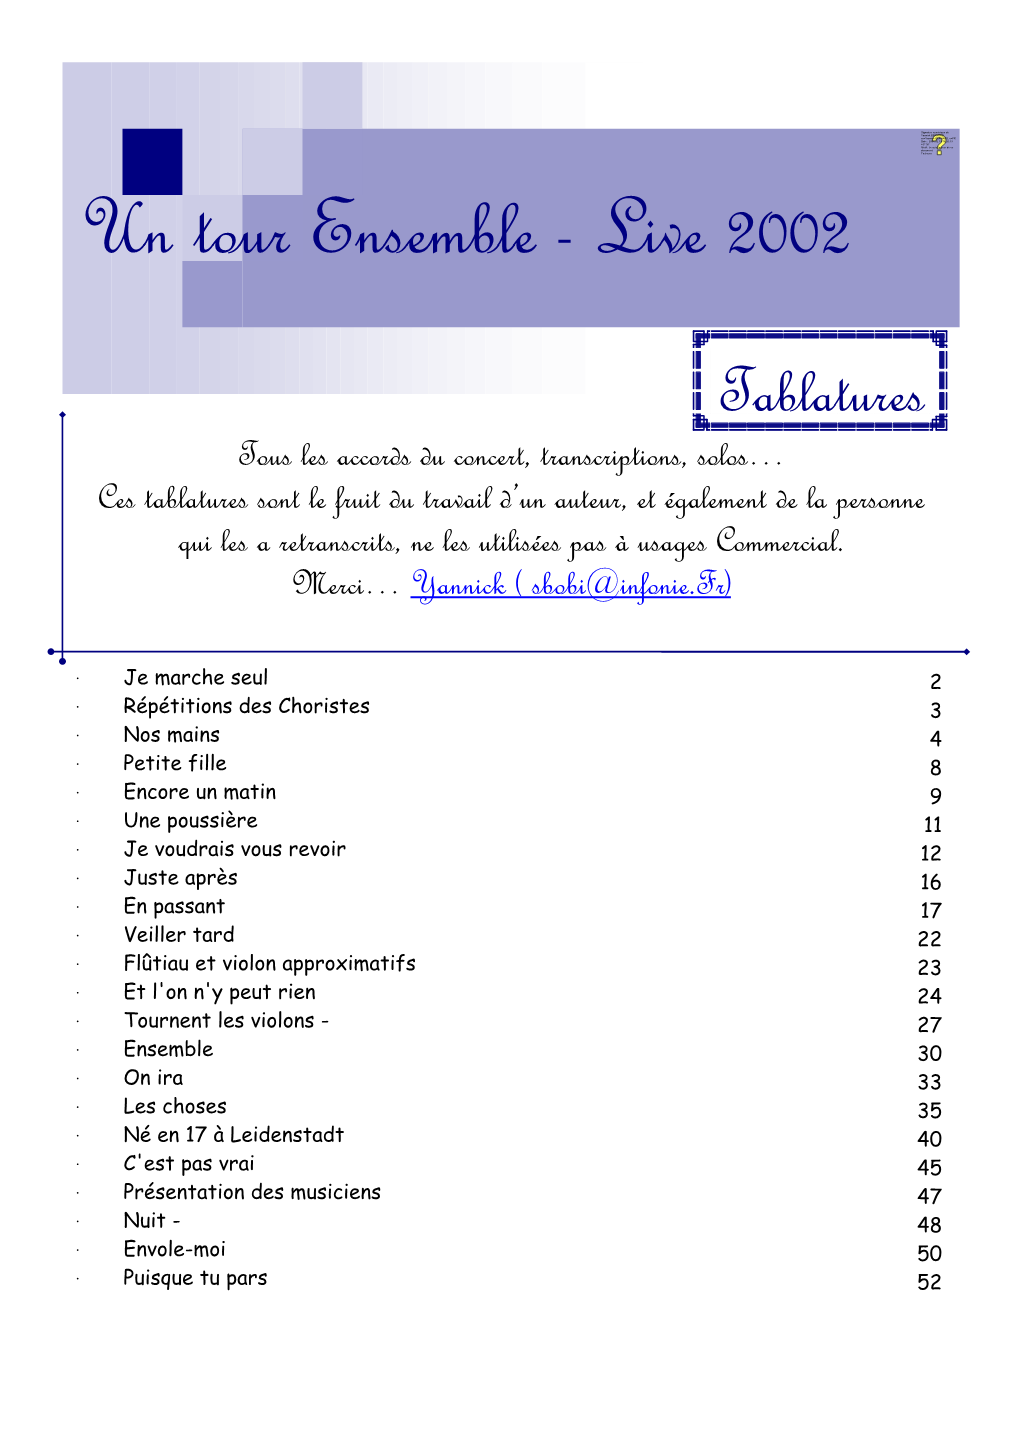 Un Tour Ensemble - Live 2002